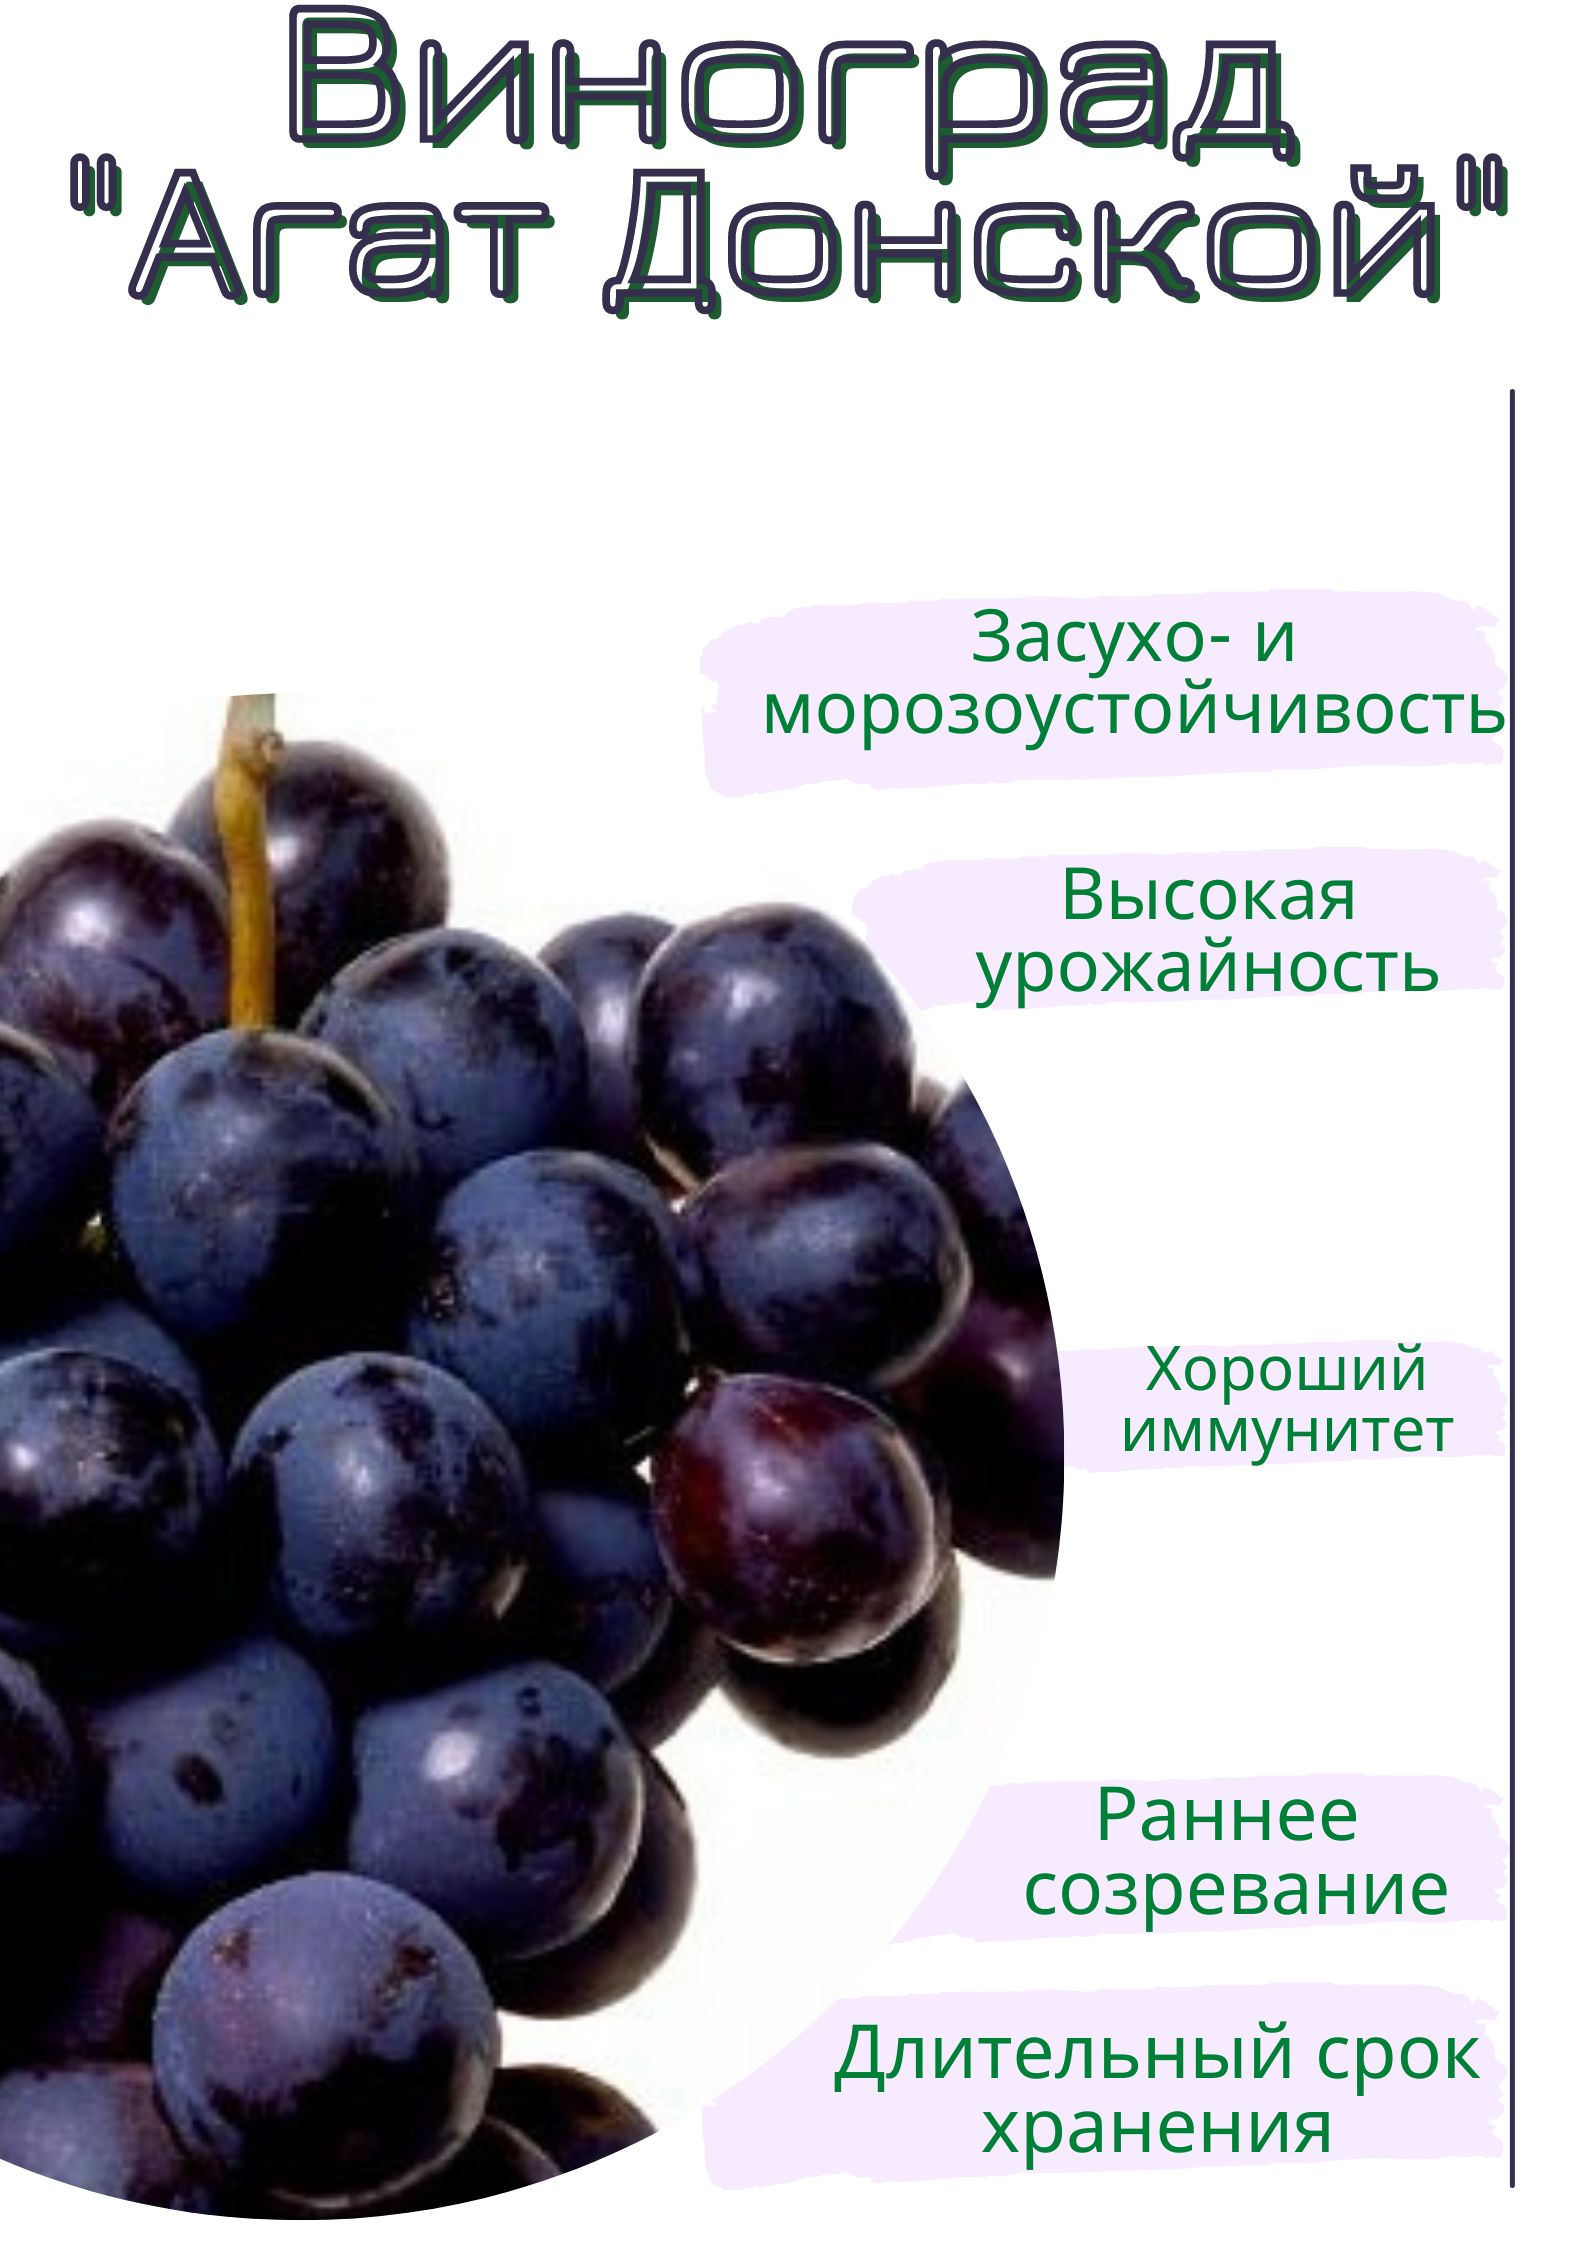 посланник виноград описание сорта фото отзывы форум